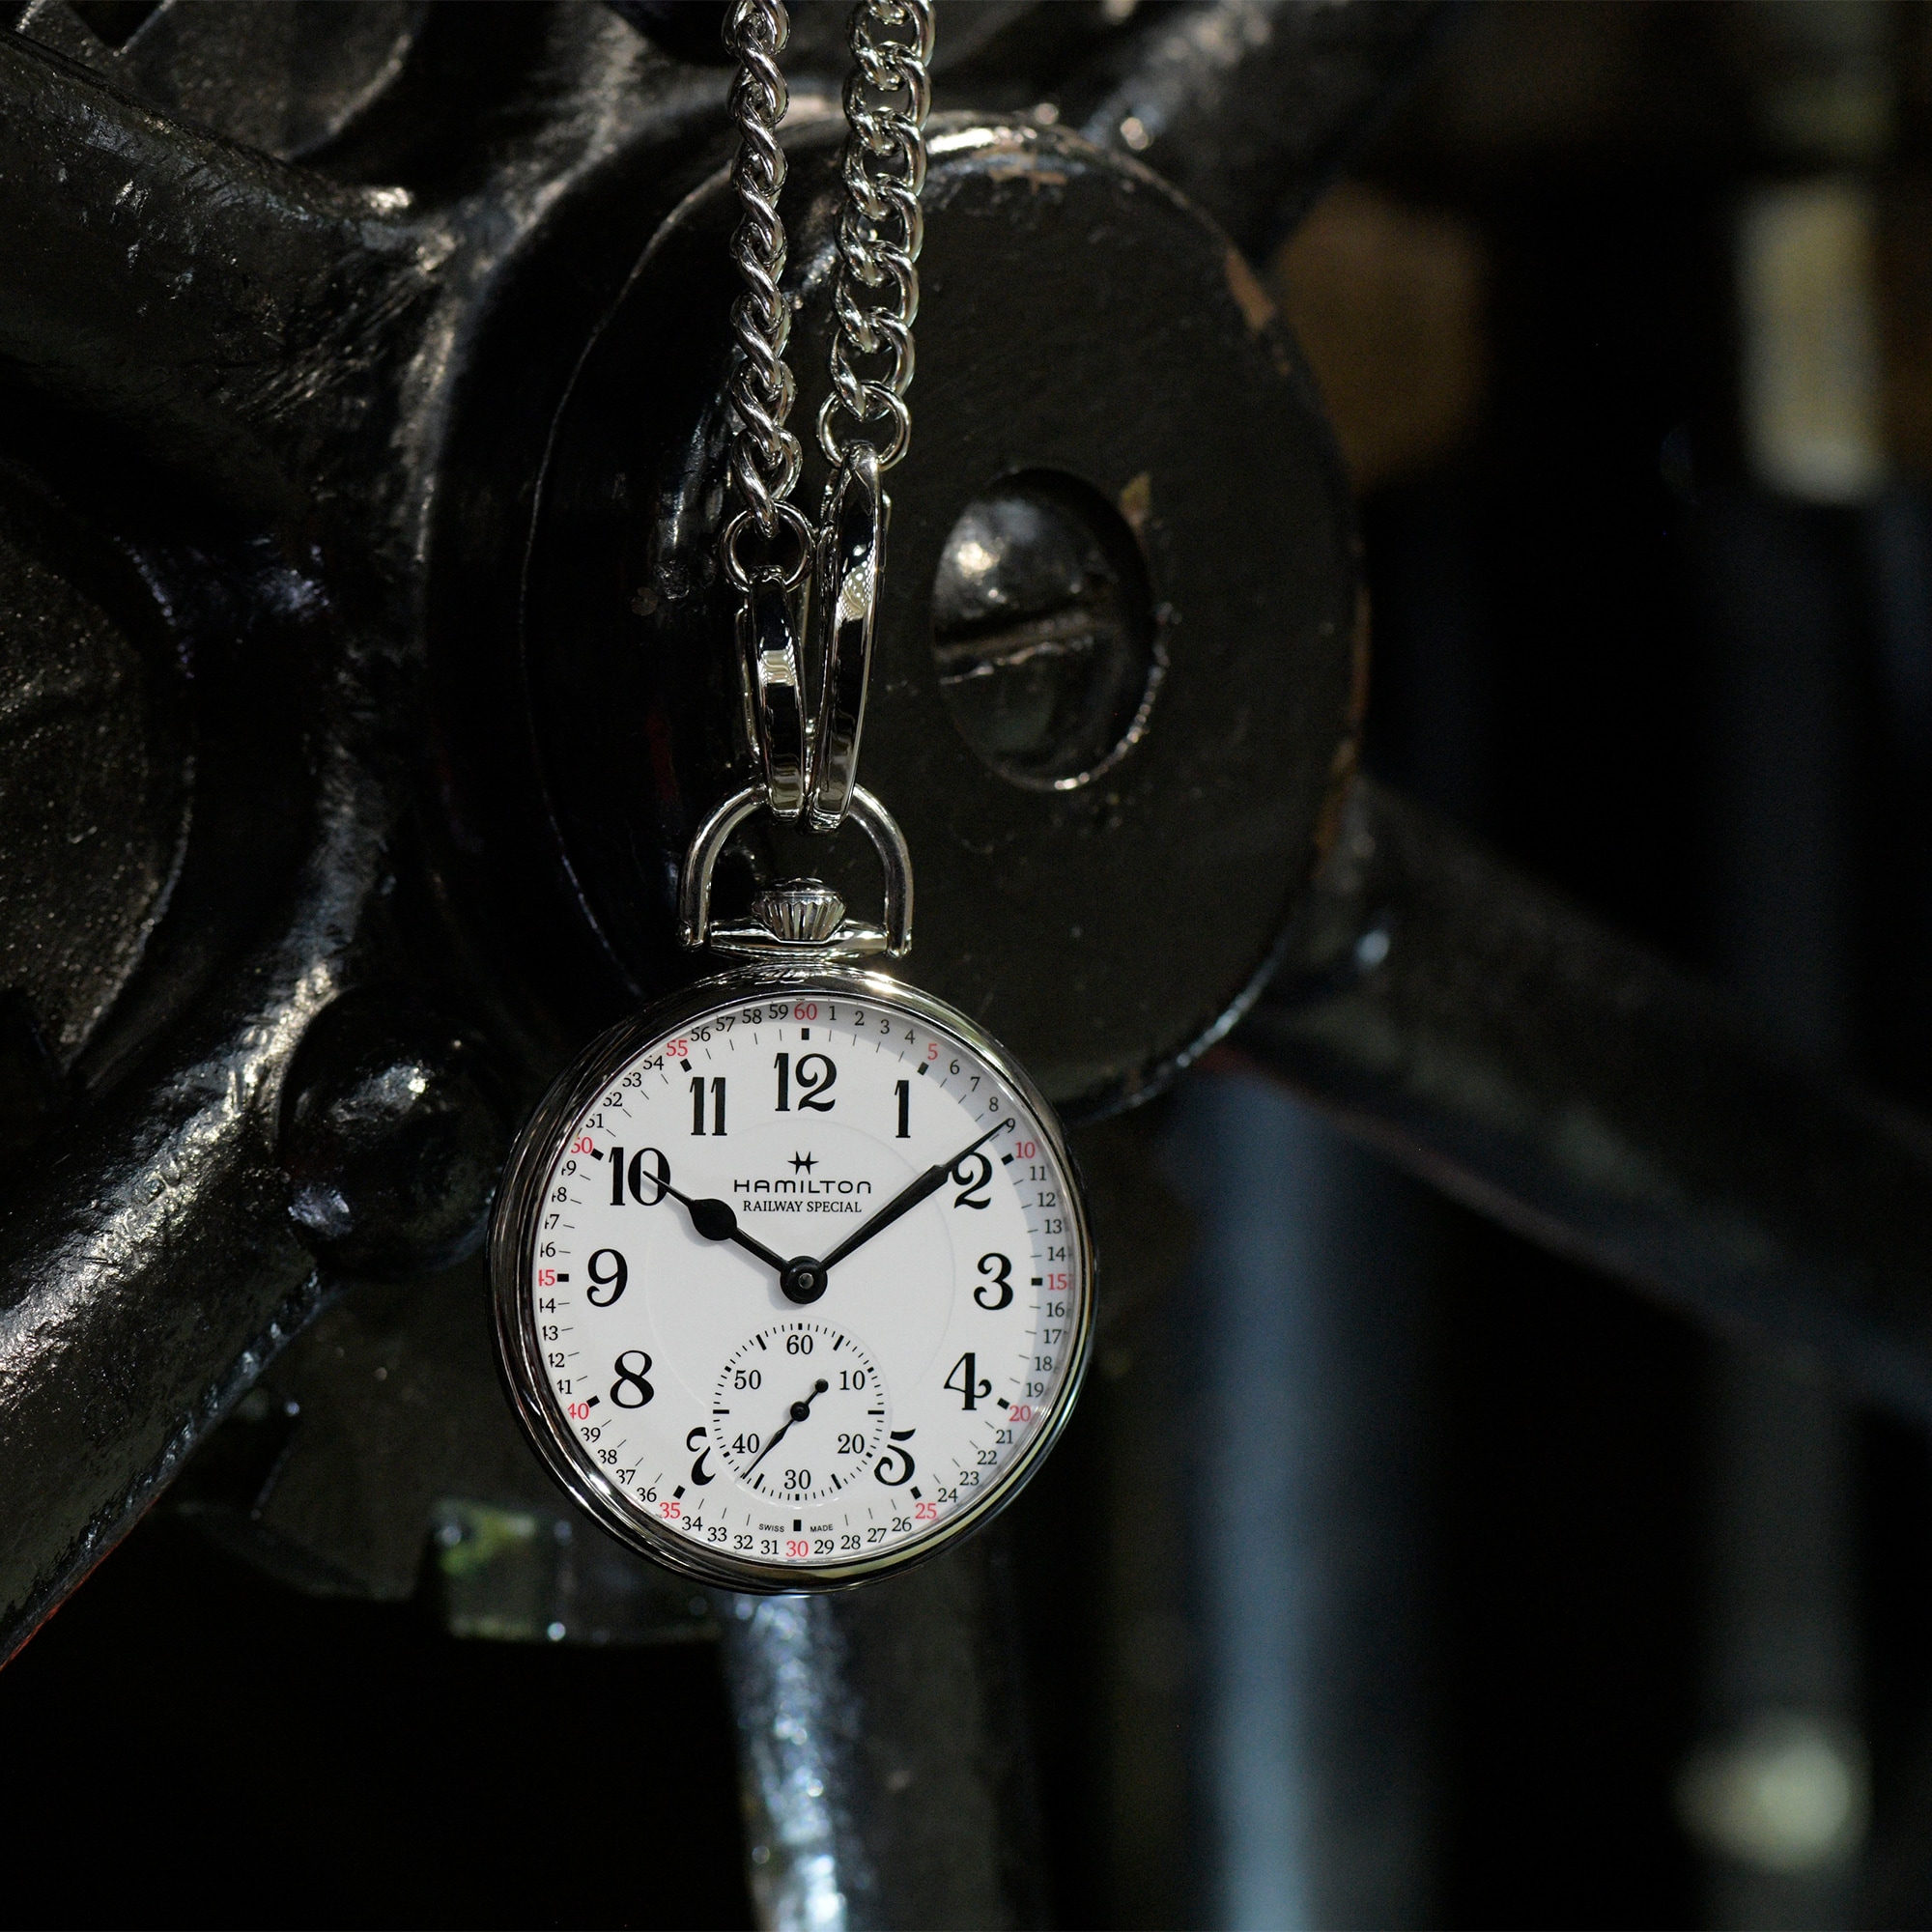 Nuevo Railroad Pocket Watch, un reloj de bolsillo inspirado en el legado histórico de Hamilton